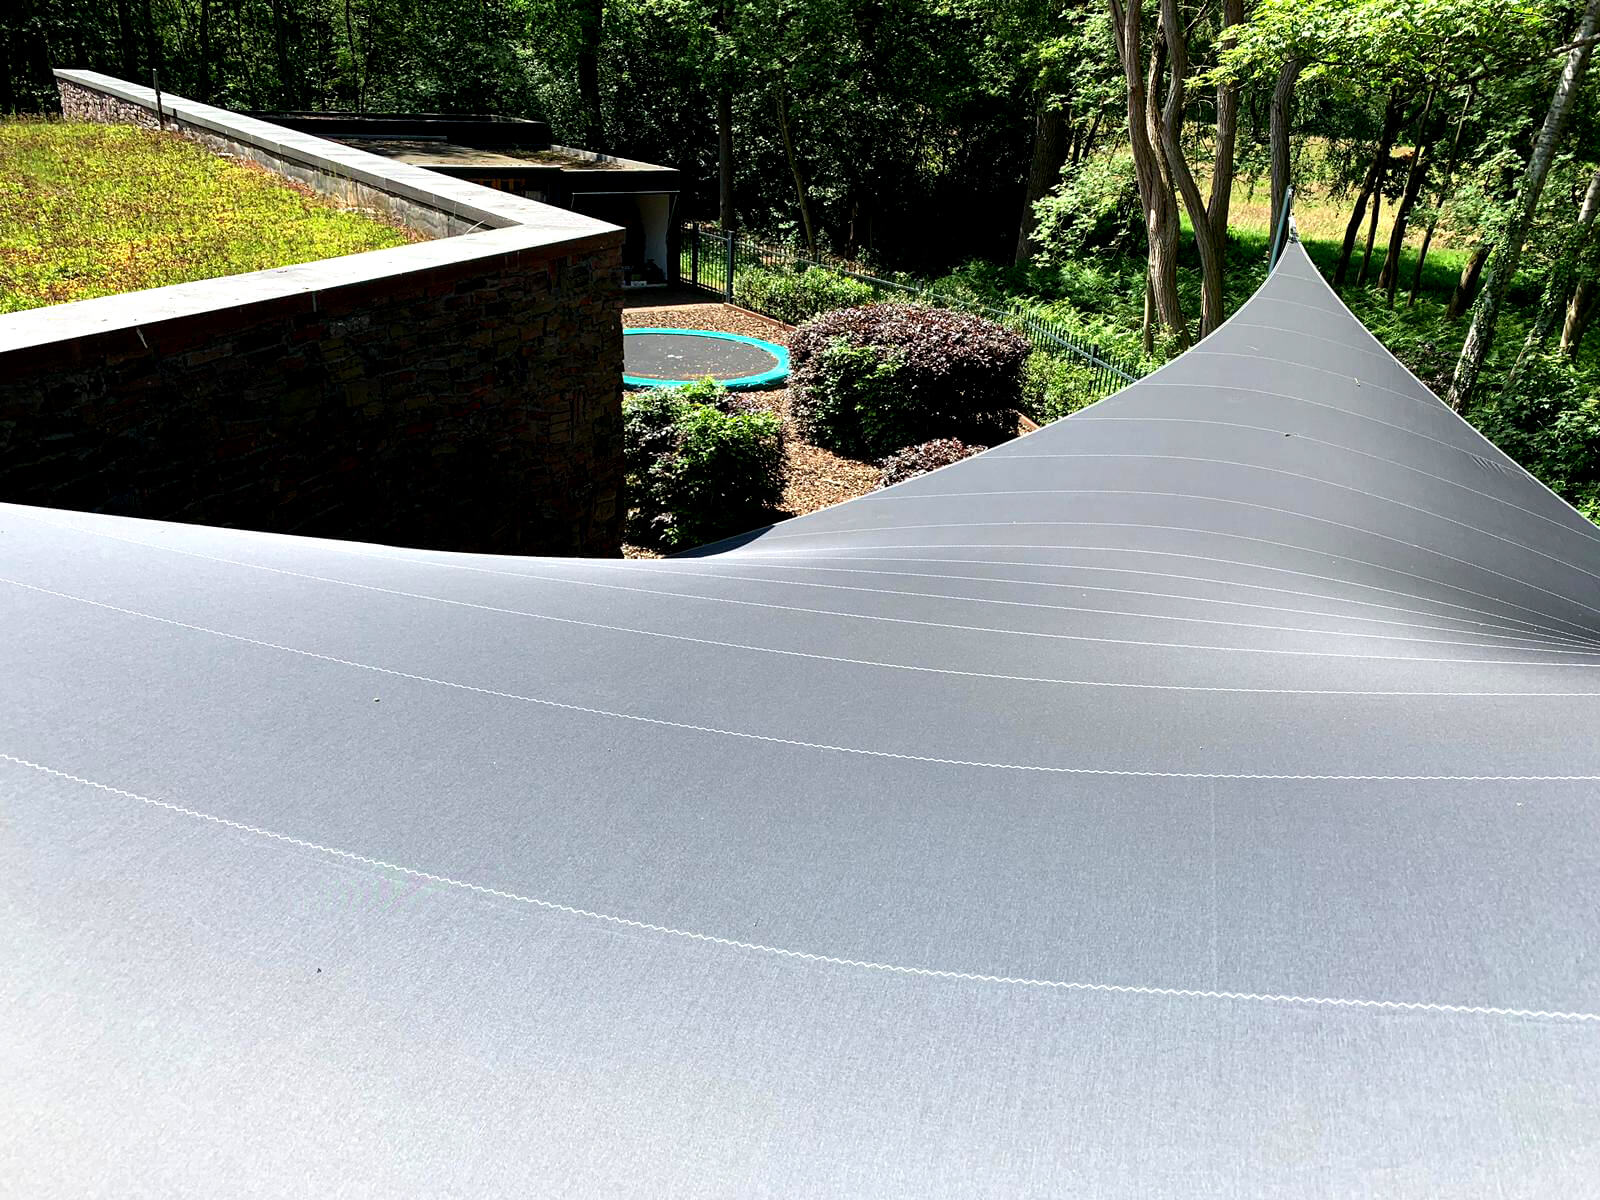 Design overkapping van zeil doek als zonnezeil systeem op dakterras - Texstyleroofs